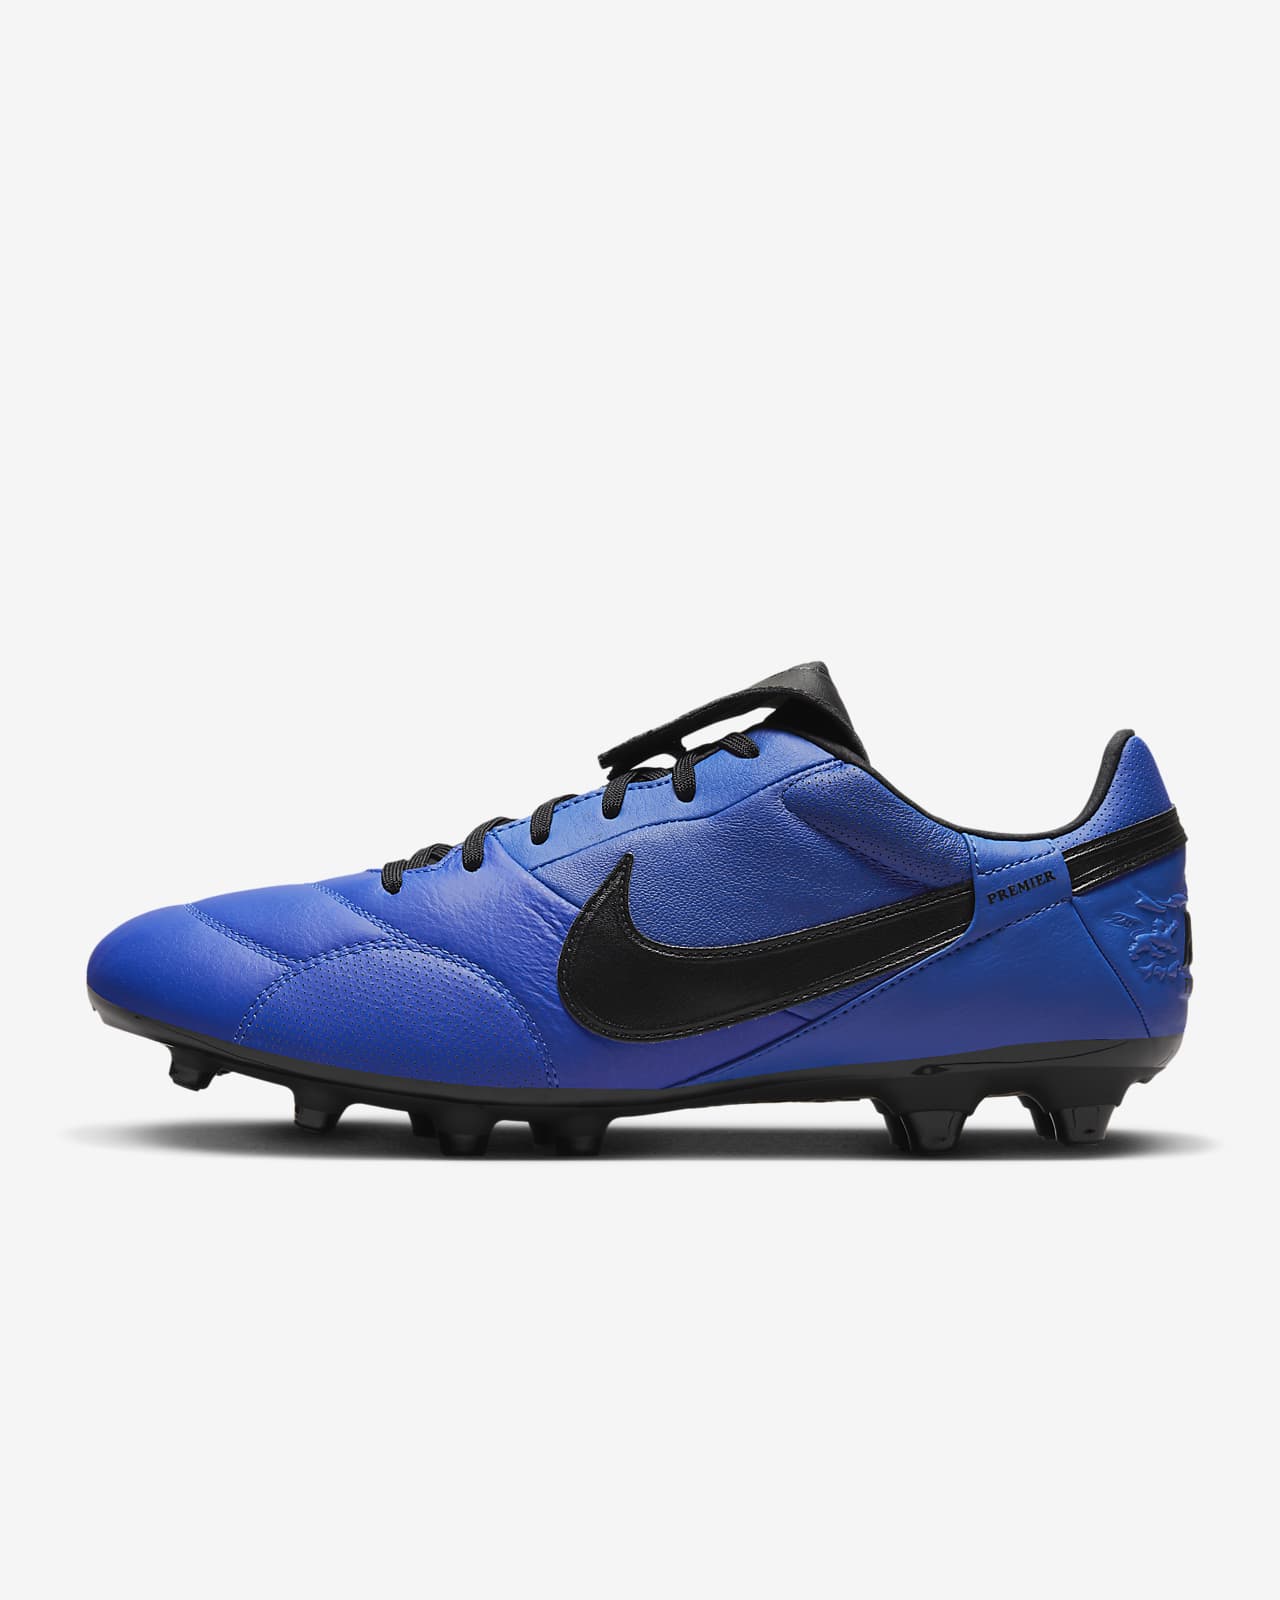 Milímetro Afirmar arrendamiento The Nike Premier 3 FG Firm-Ground Football Boots. Nike AU